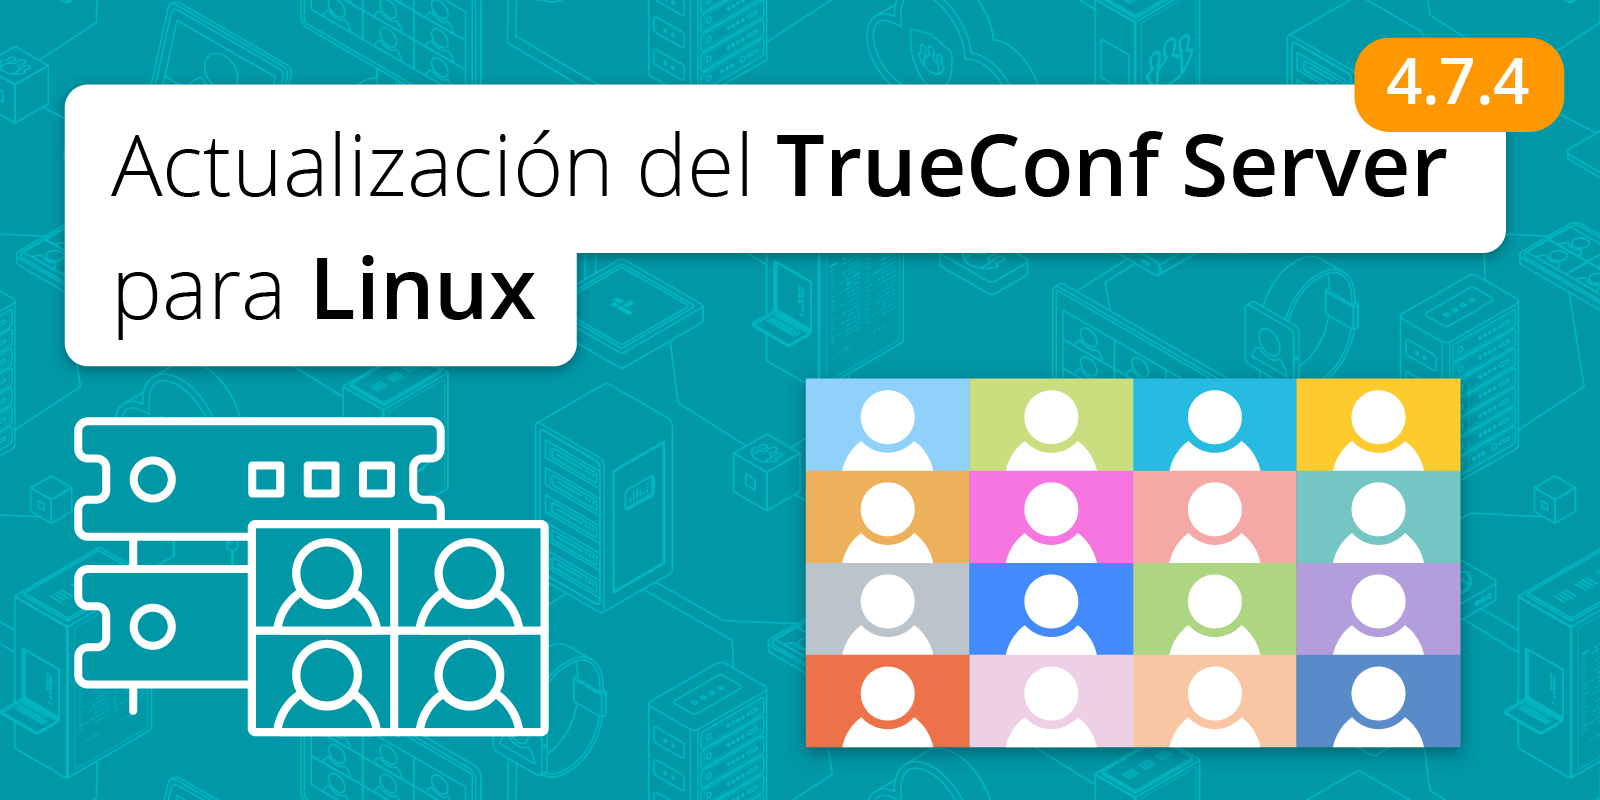 TrueConf Server 4.7.4 para Linux: compatibilidad con Debian 11 2